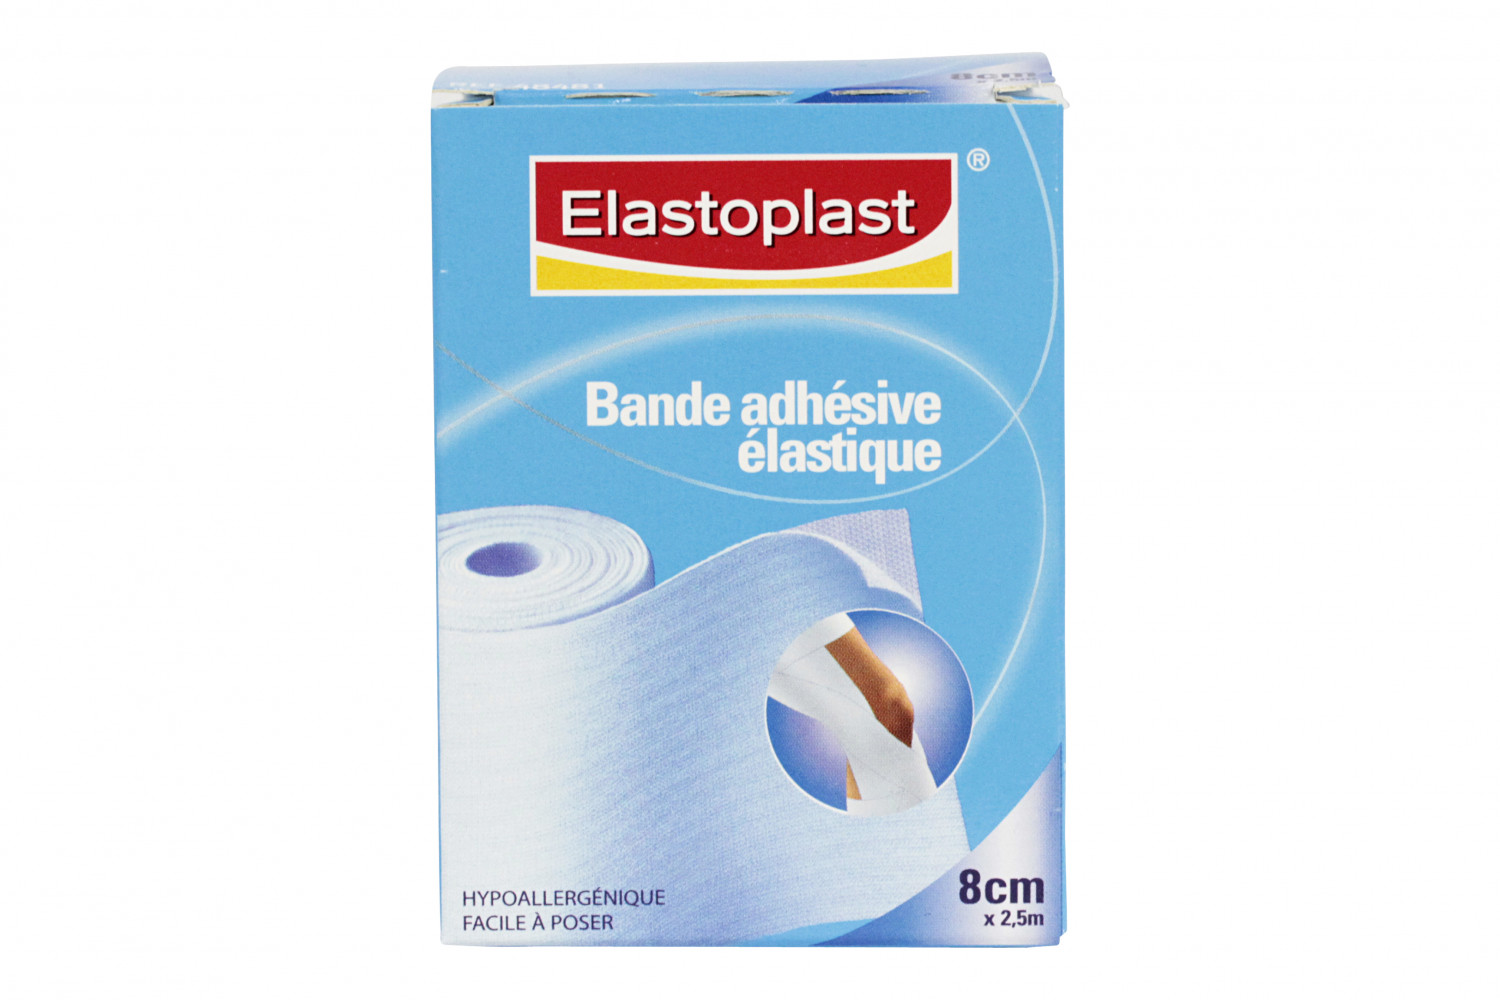 Elastoplast Bande Adhésive Élastique 8cmx2.5m - Soutien Souple